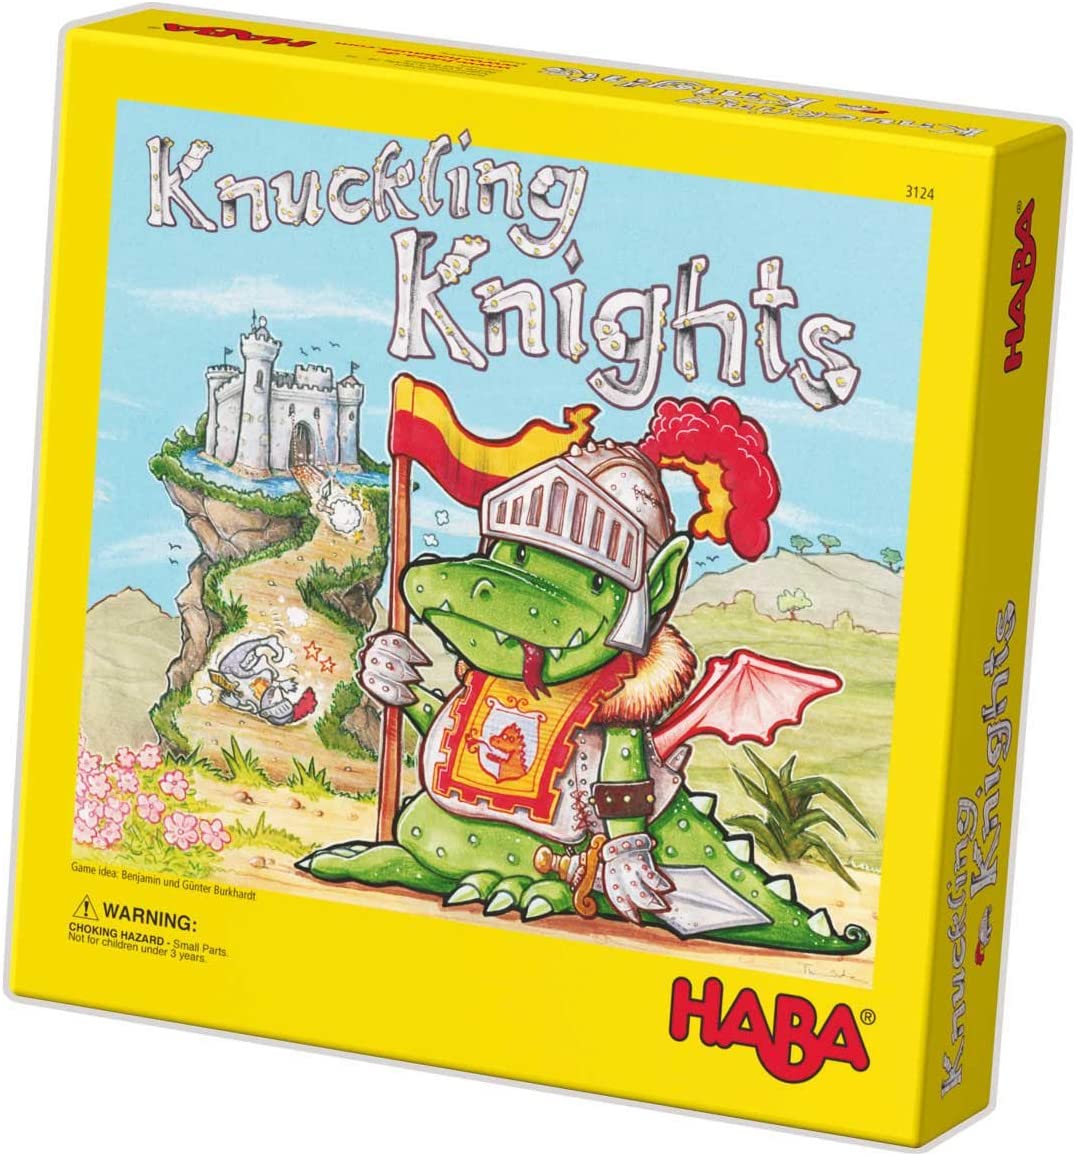 HABA Knuckling Knights HABA